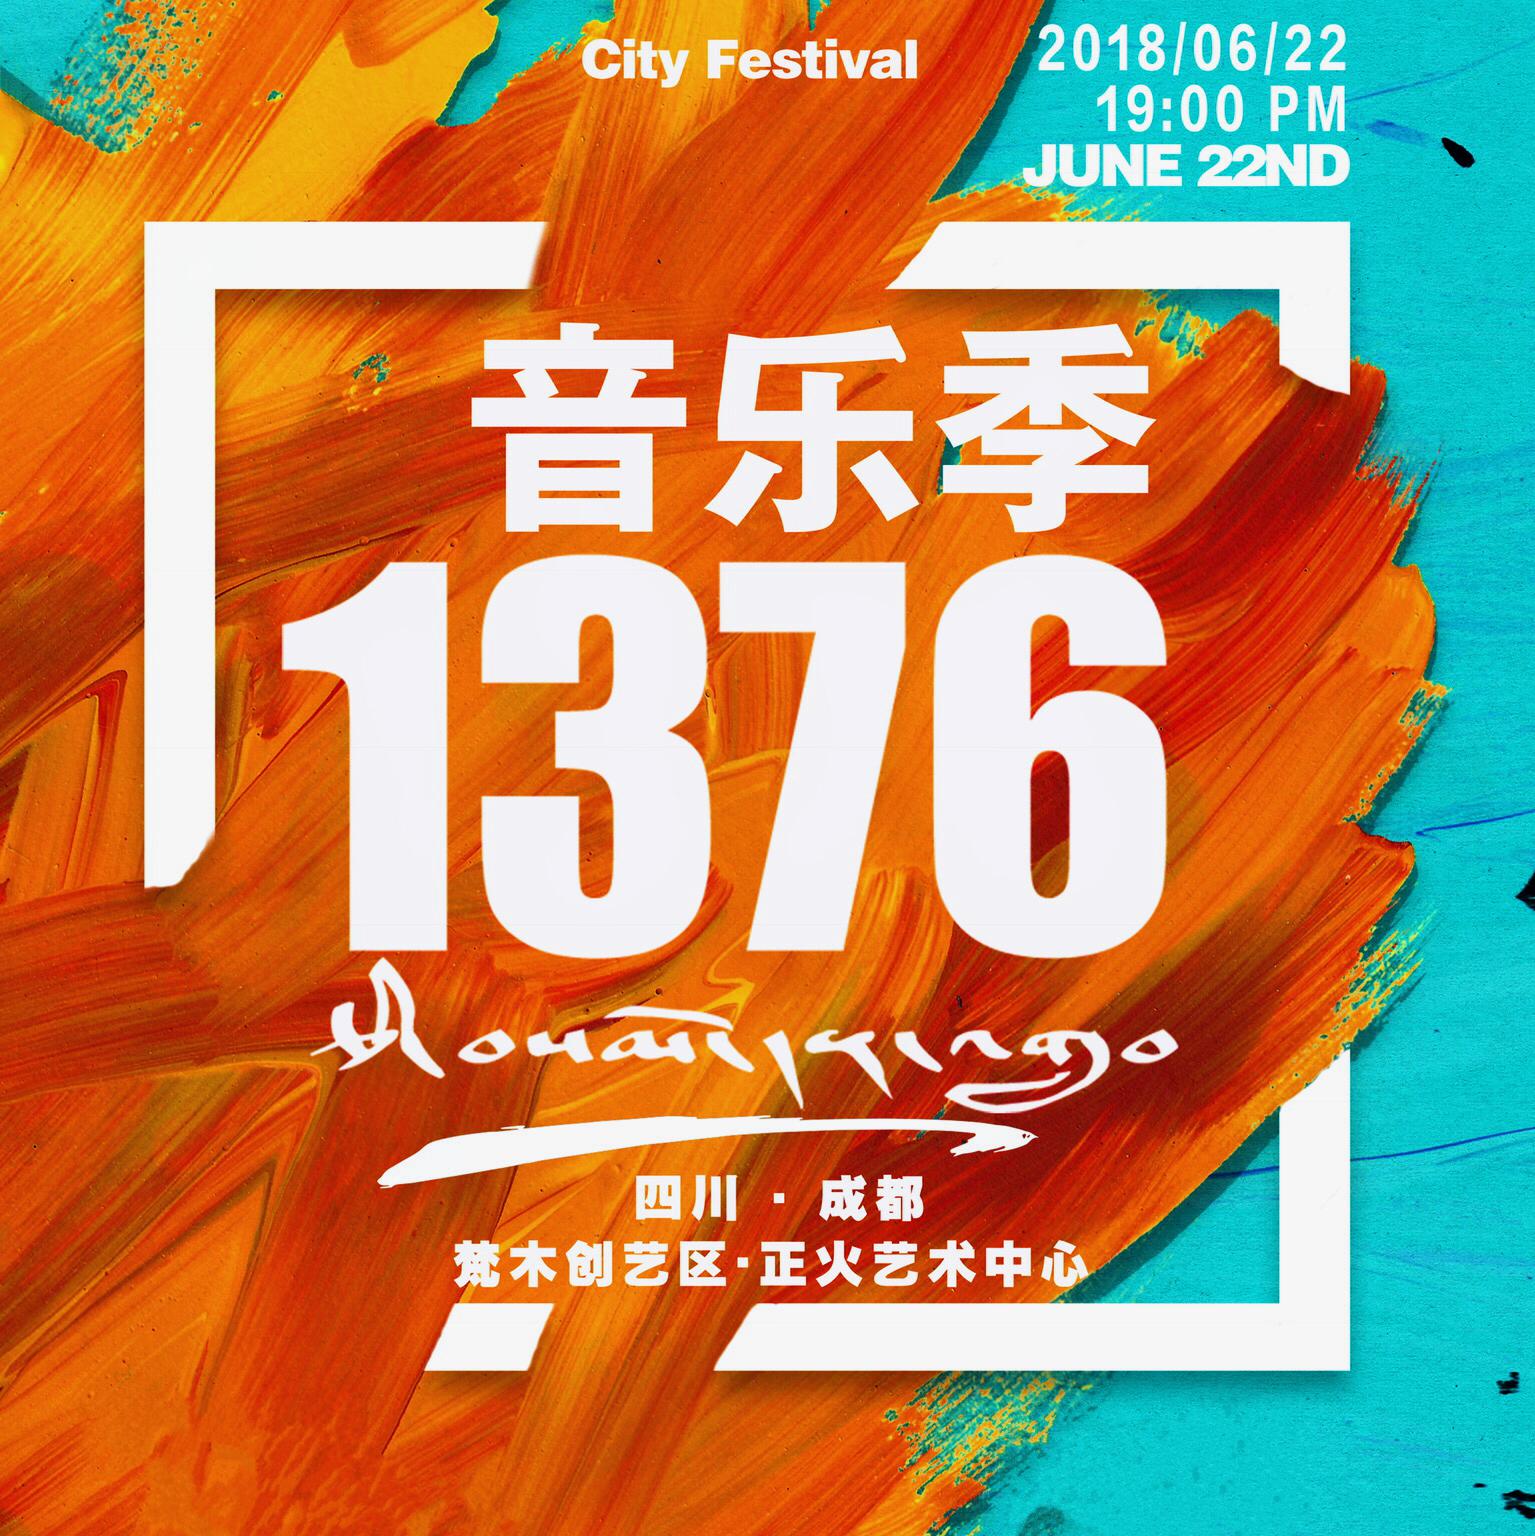 1376主题歌先行版 - 1376藏潮文化 - 单曲 - 网易云